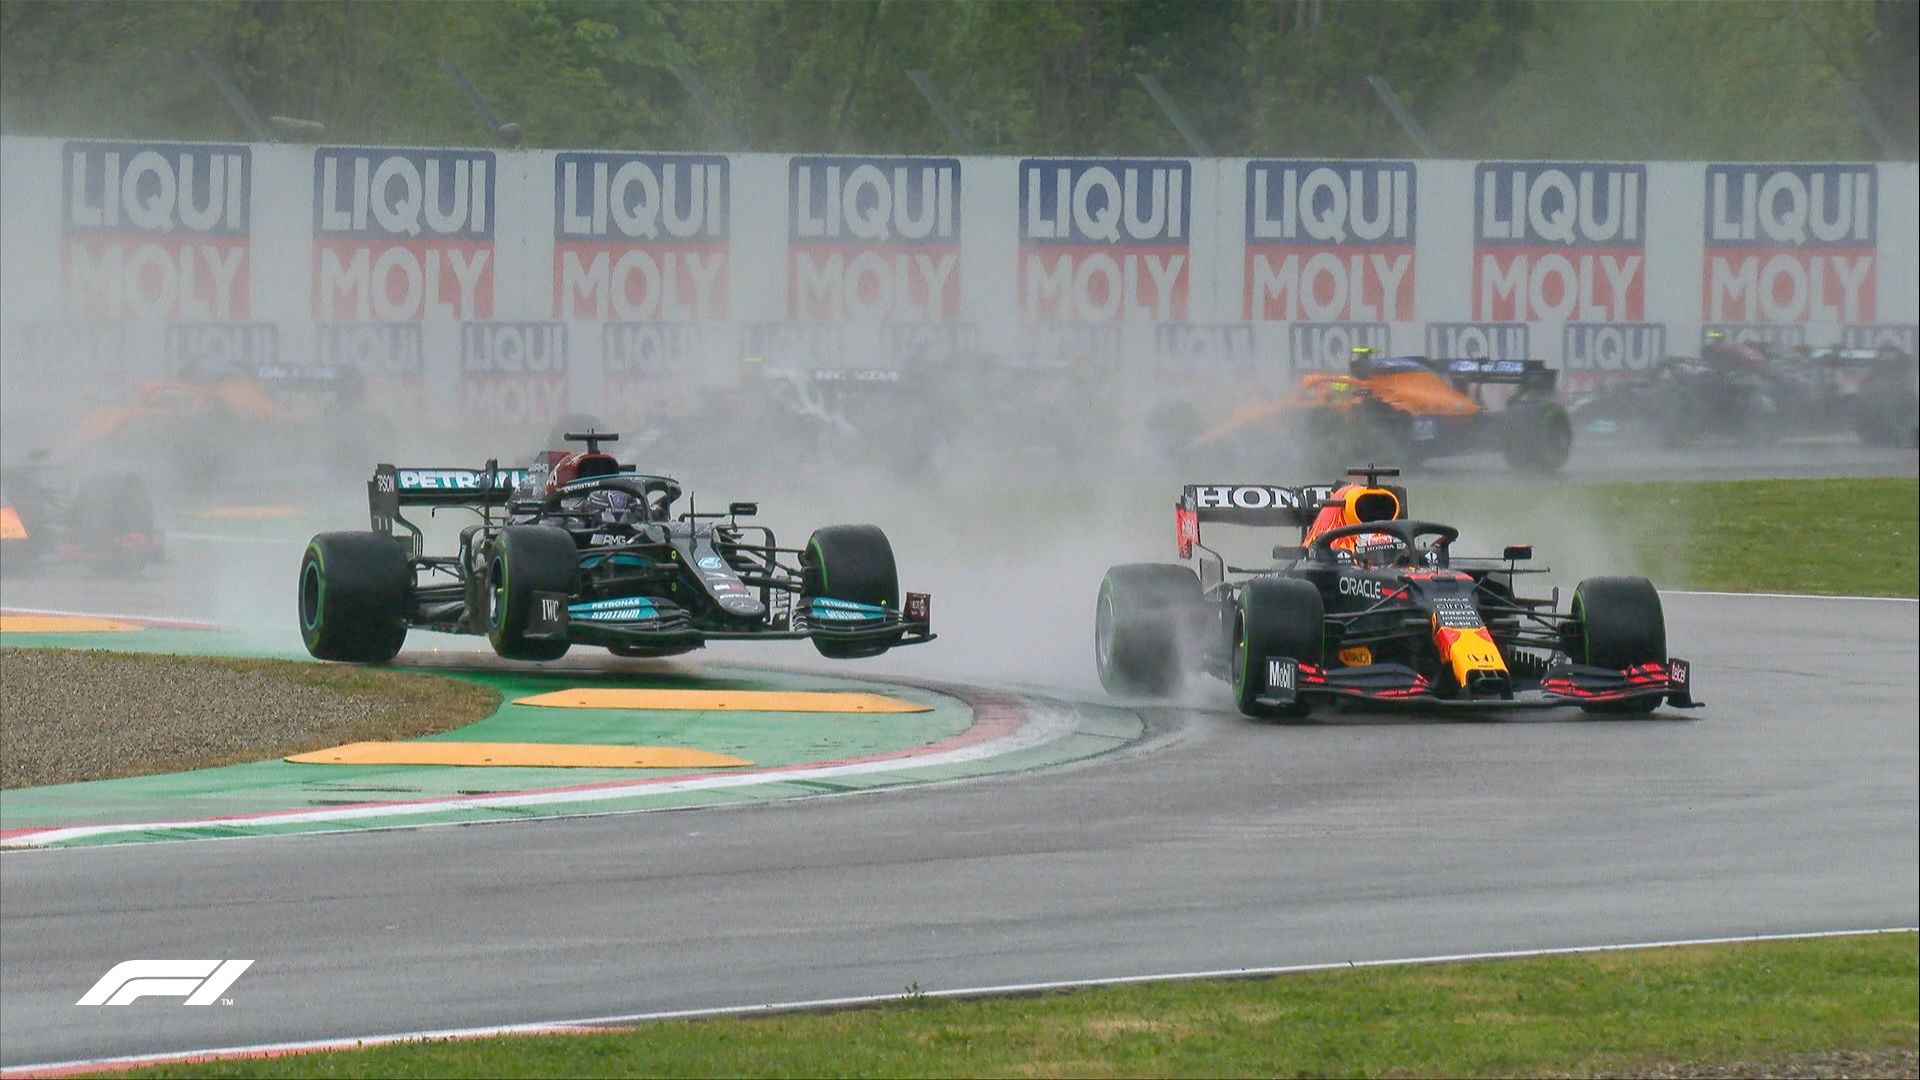 Persaingan sengit antara Lewis Hamilton (kiri) dan Max Verstappen (kanan) tersaji pada awal F1 GP Emilia Romagna 2021 yang berlangsung di Sirkuit Imola, Italia pada Minggu (18/4/2021).